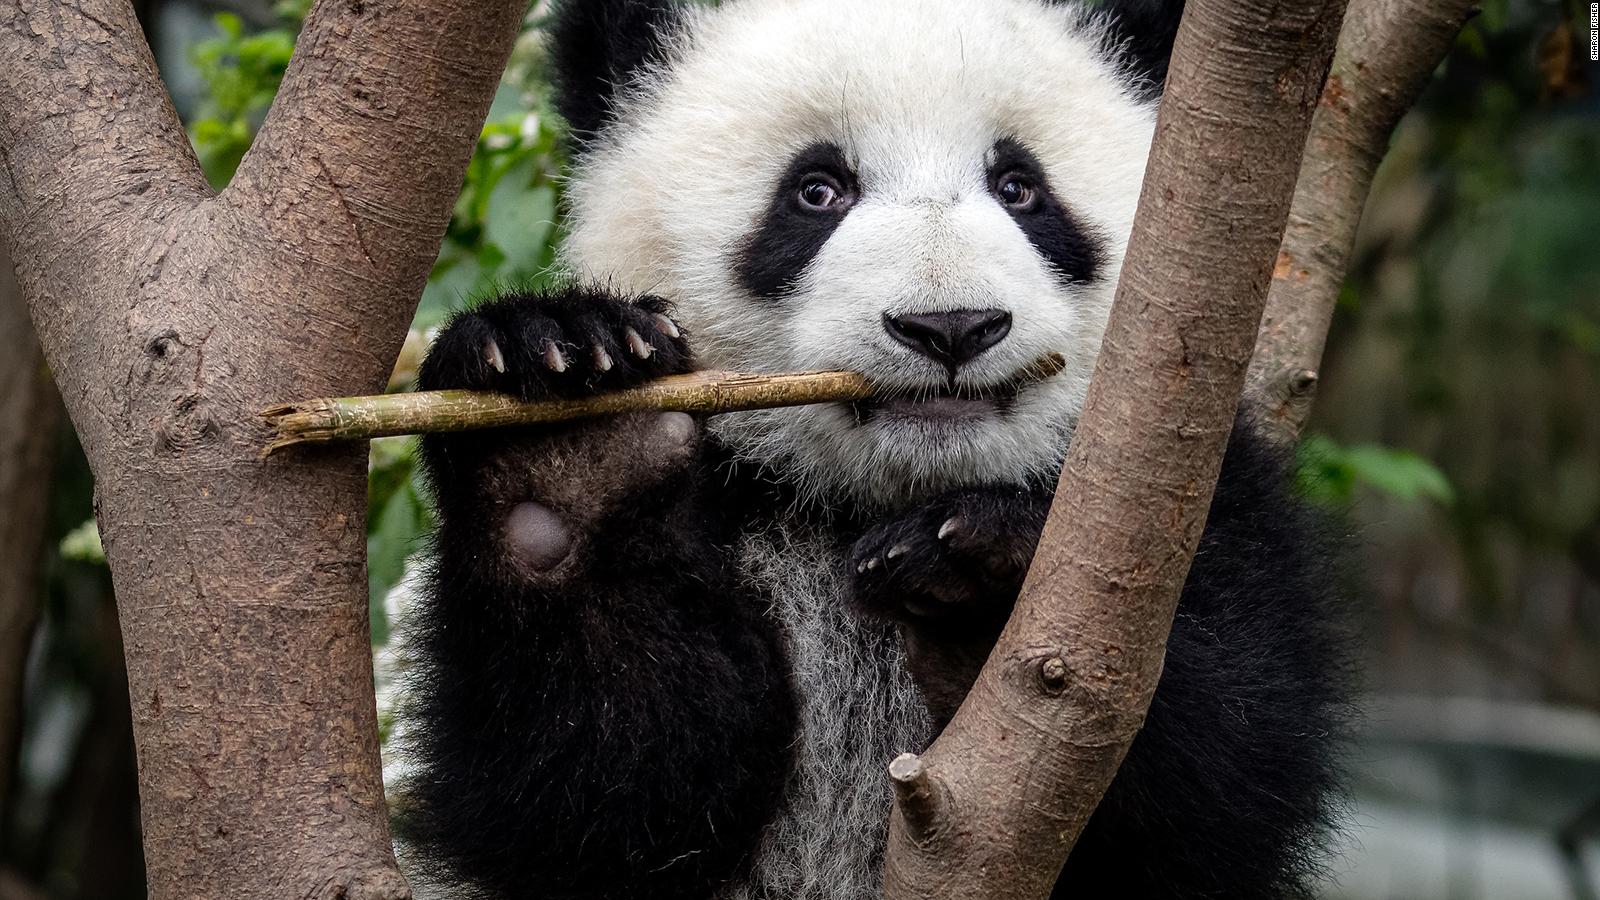 Pobre panda de basura bebé encontrado sin mamá a la vista - Toucan